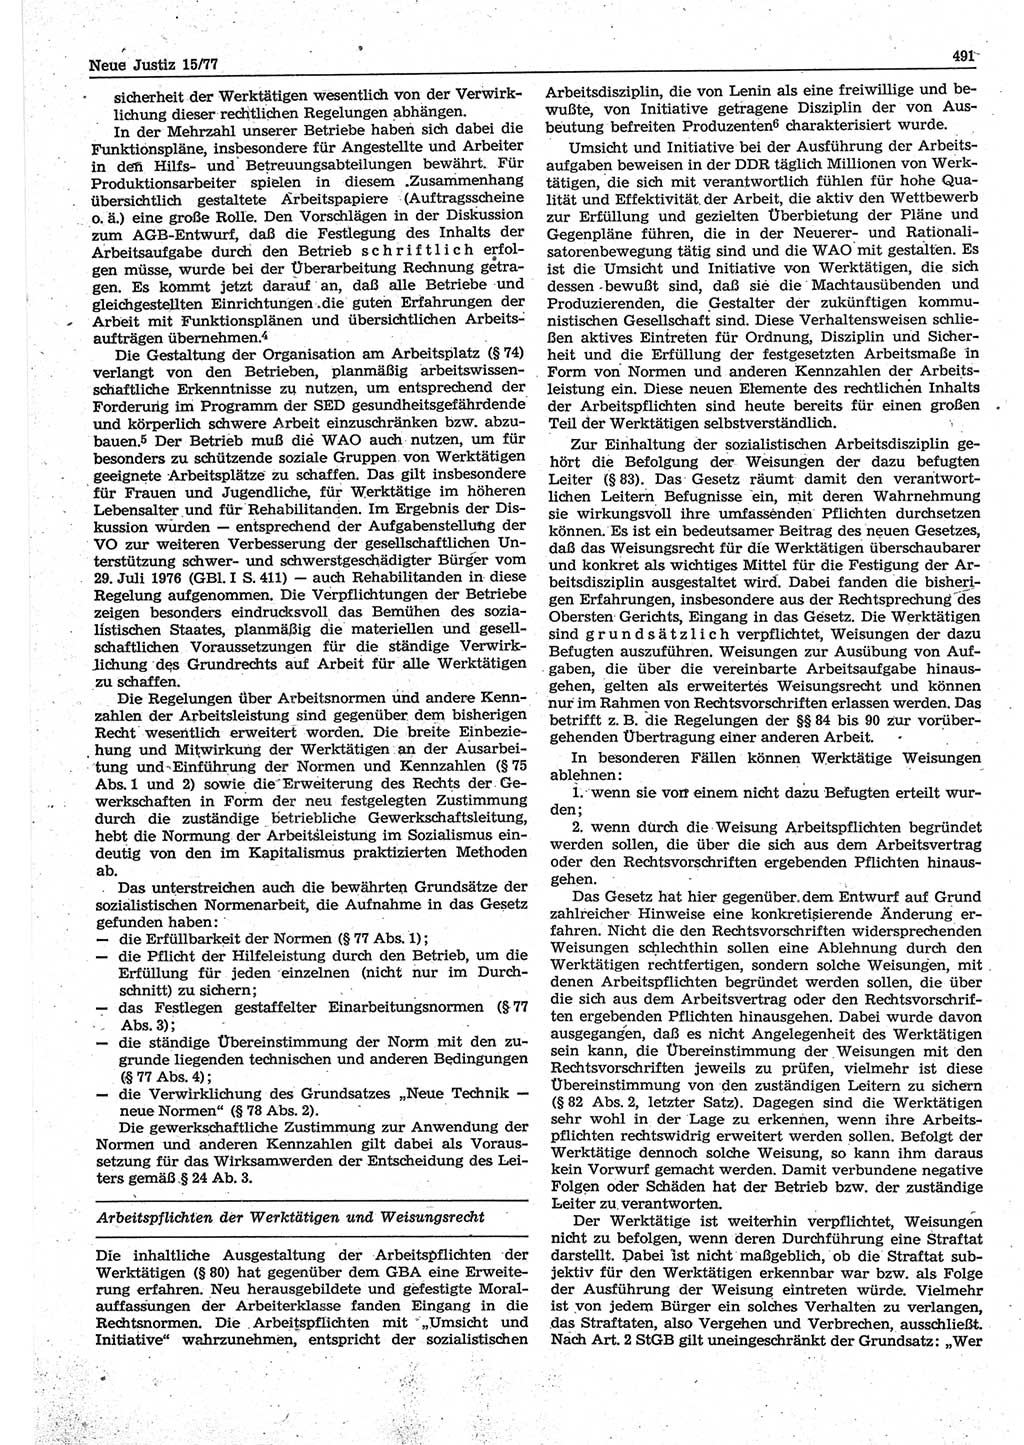 Neue Justiz (NJ), Zeitschrift für Recht und Rechtswissenschaft-Zeitschrift, sozialistisches Recht und Gesetzlichkeit, 31. Jahrgang 1977, Seite 491 (NJ DDR 1977, S. 491)